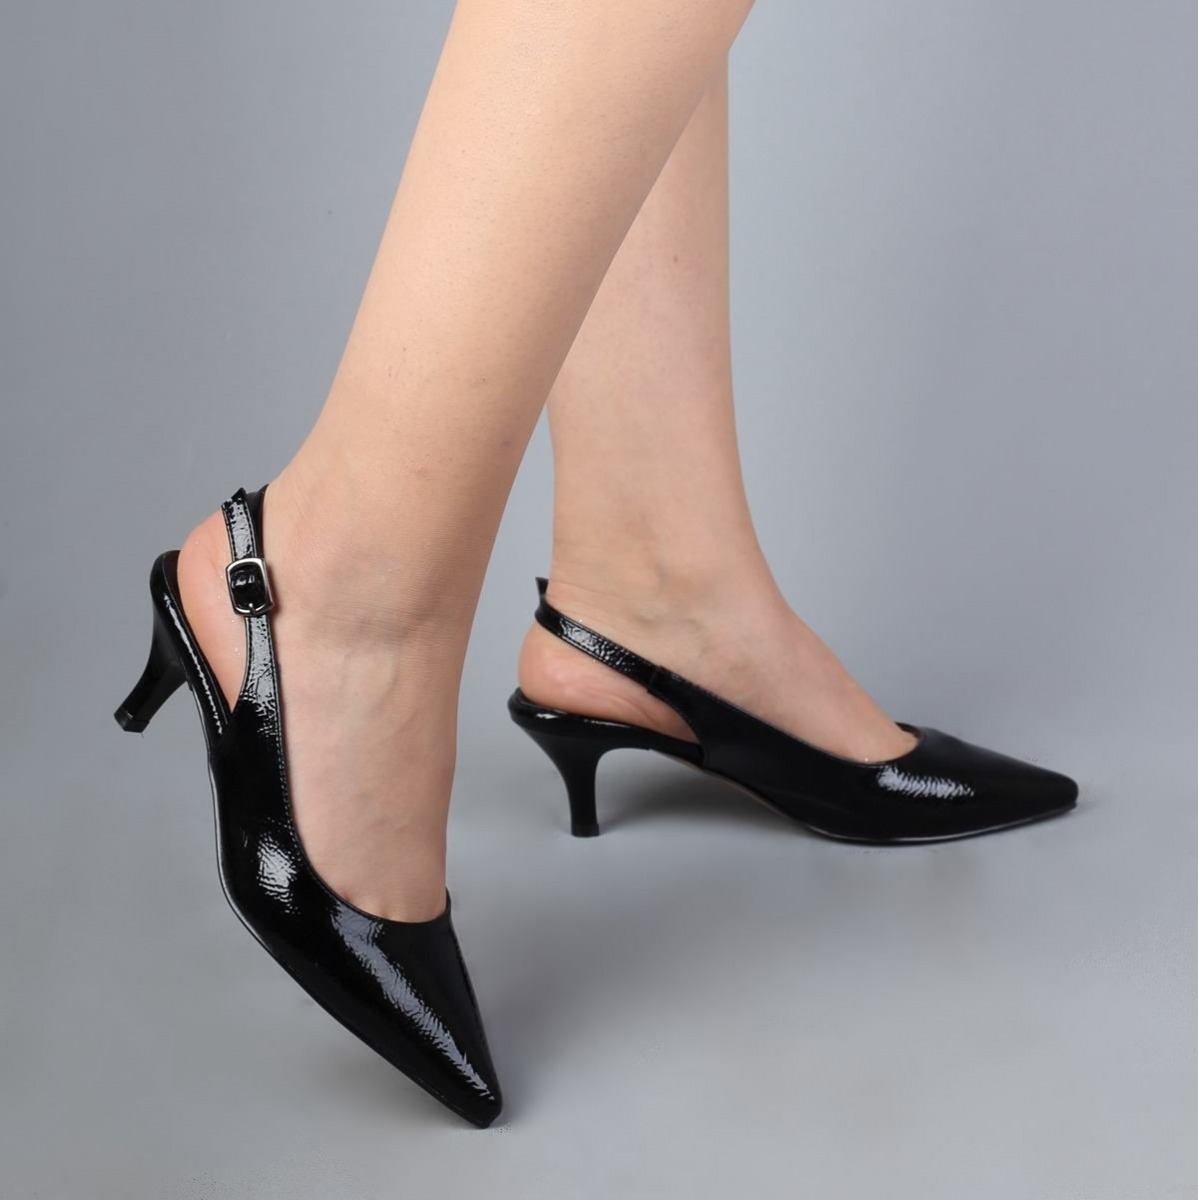 Flo Kısa Topuklu Siyah Stiletto Kadın Ayakkabı - Sas. 3